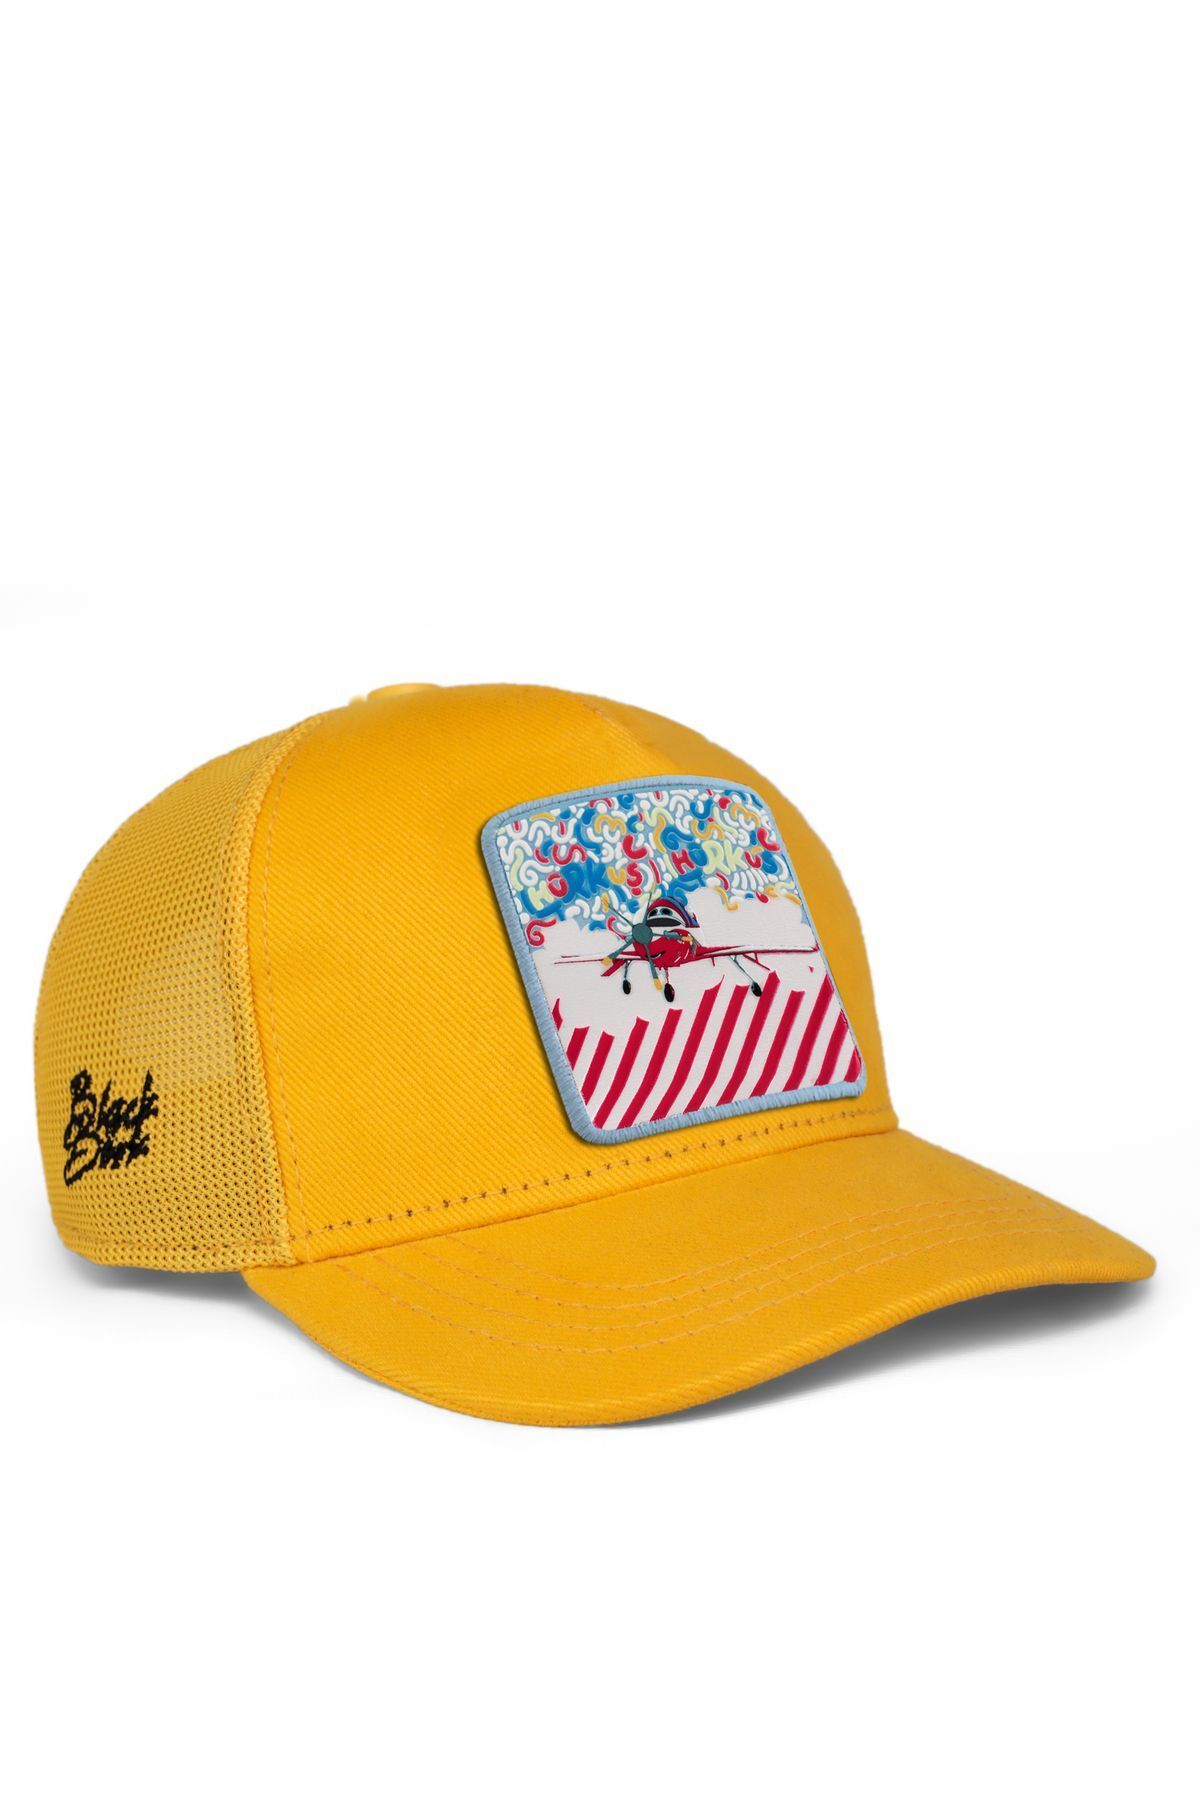 BlackBörk V1 Trucker Karnaval Hürkuş Lisanlı Sarı Çocuk Şapka